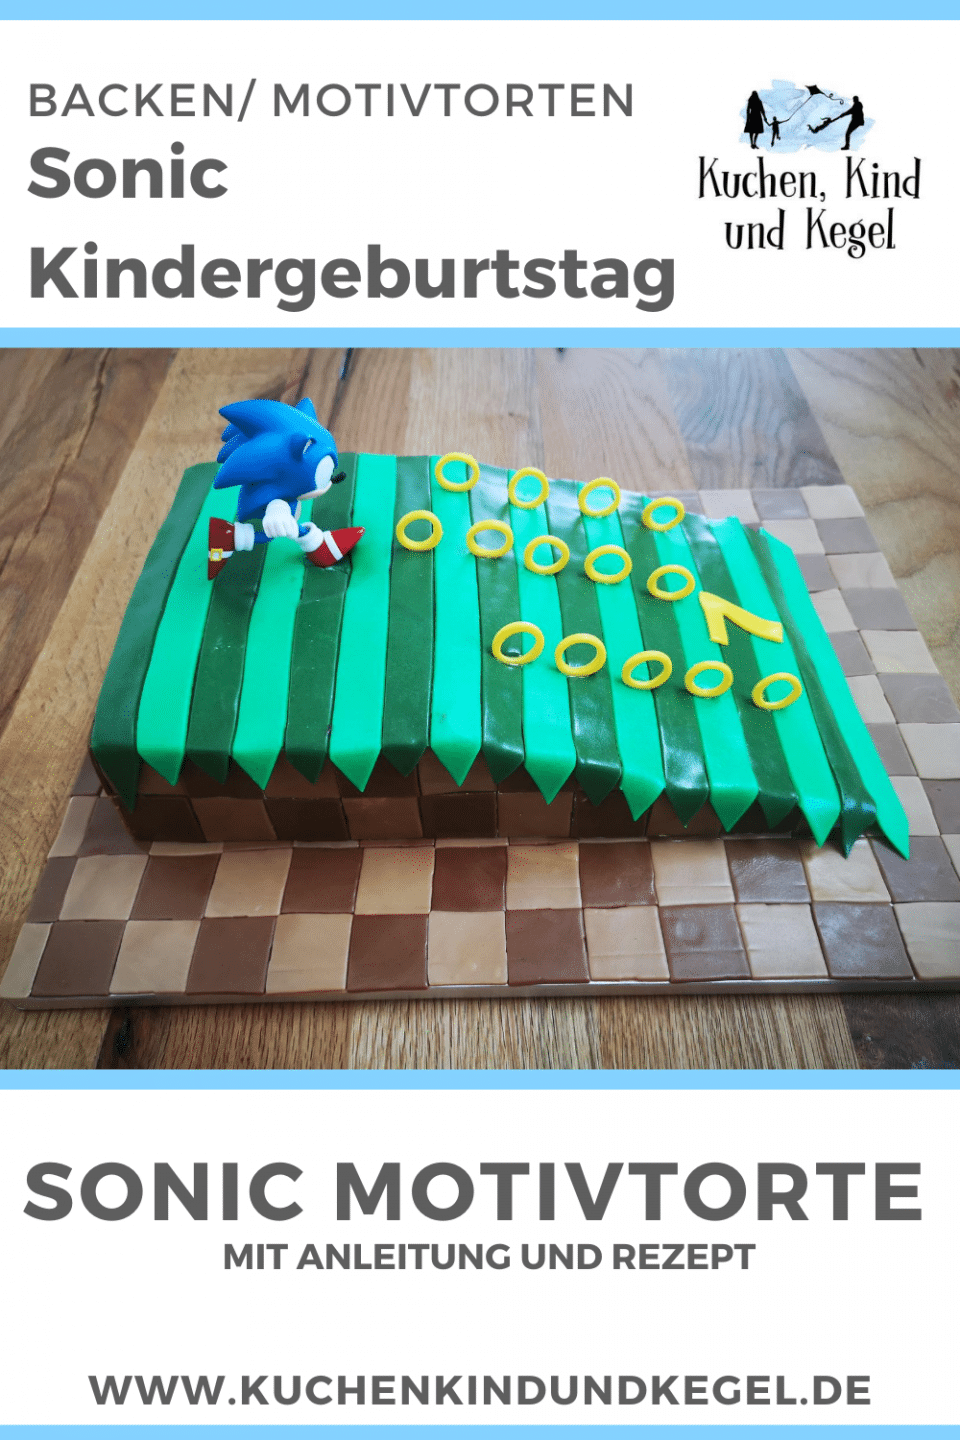 Sonic-Kindergeburtstag-einfache-Sonic-Motivtorte-mit-Rezept-und-Anleitung